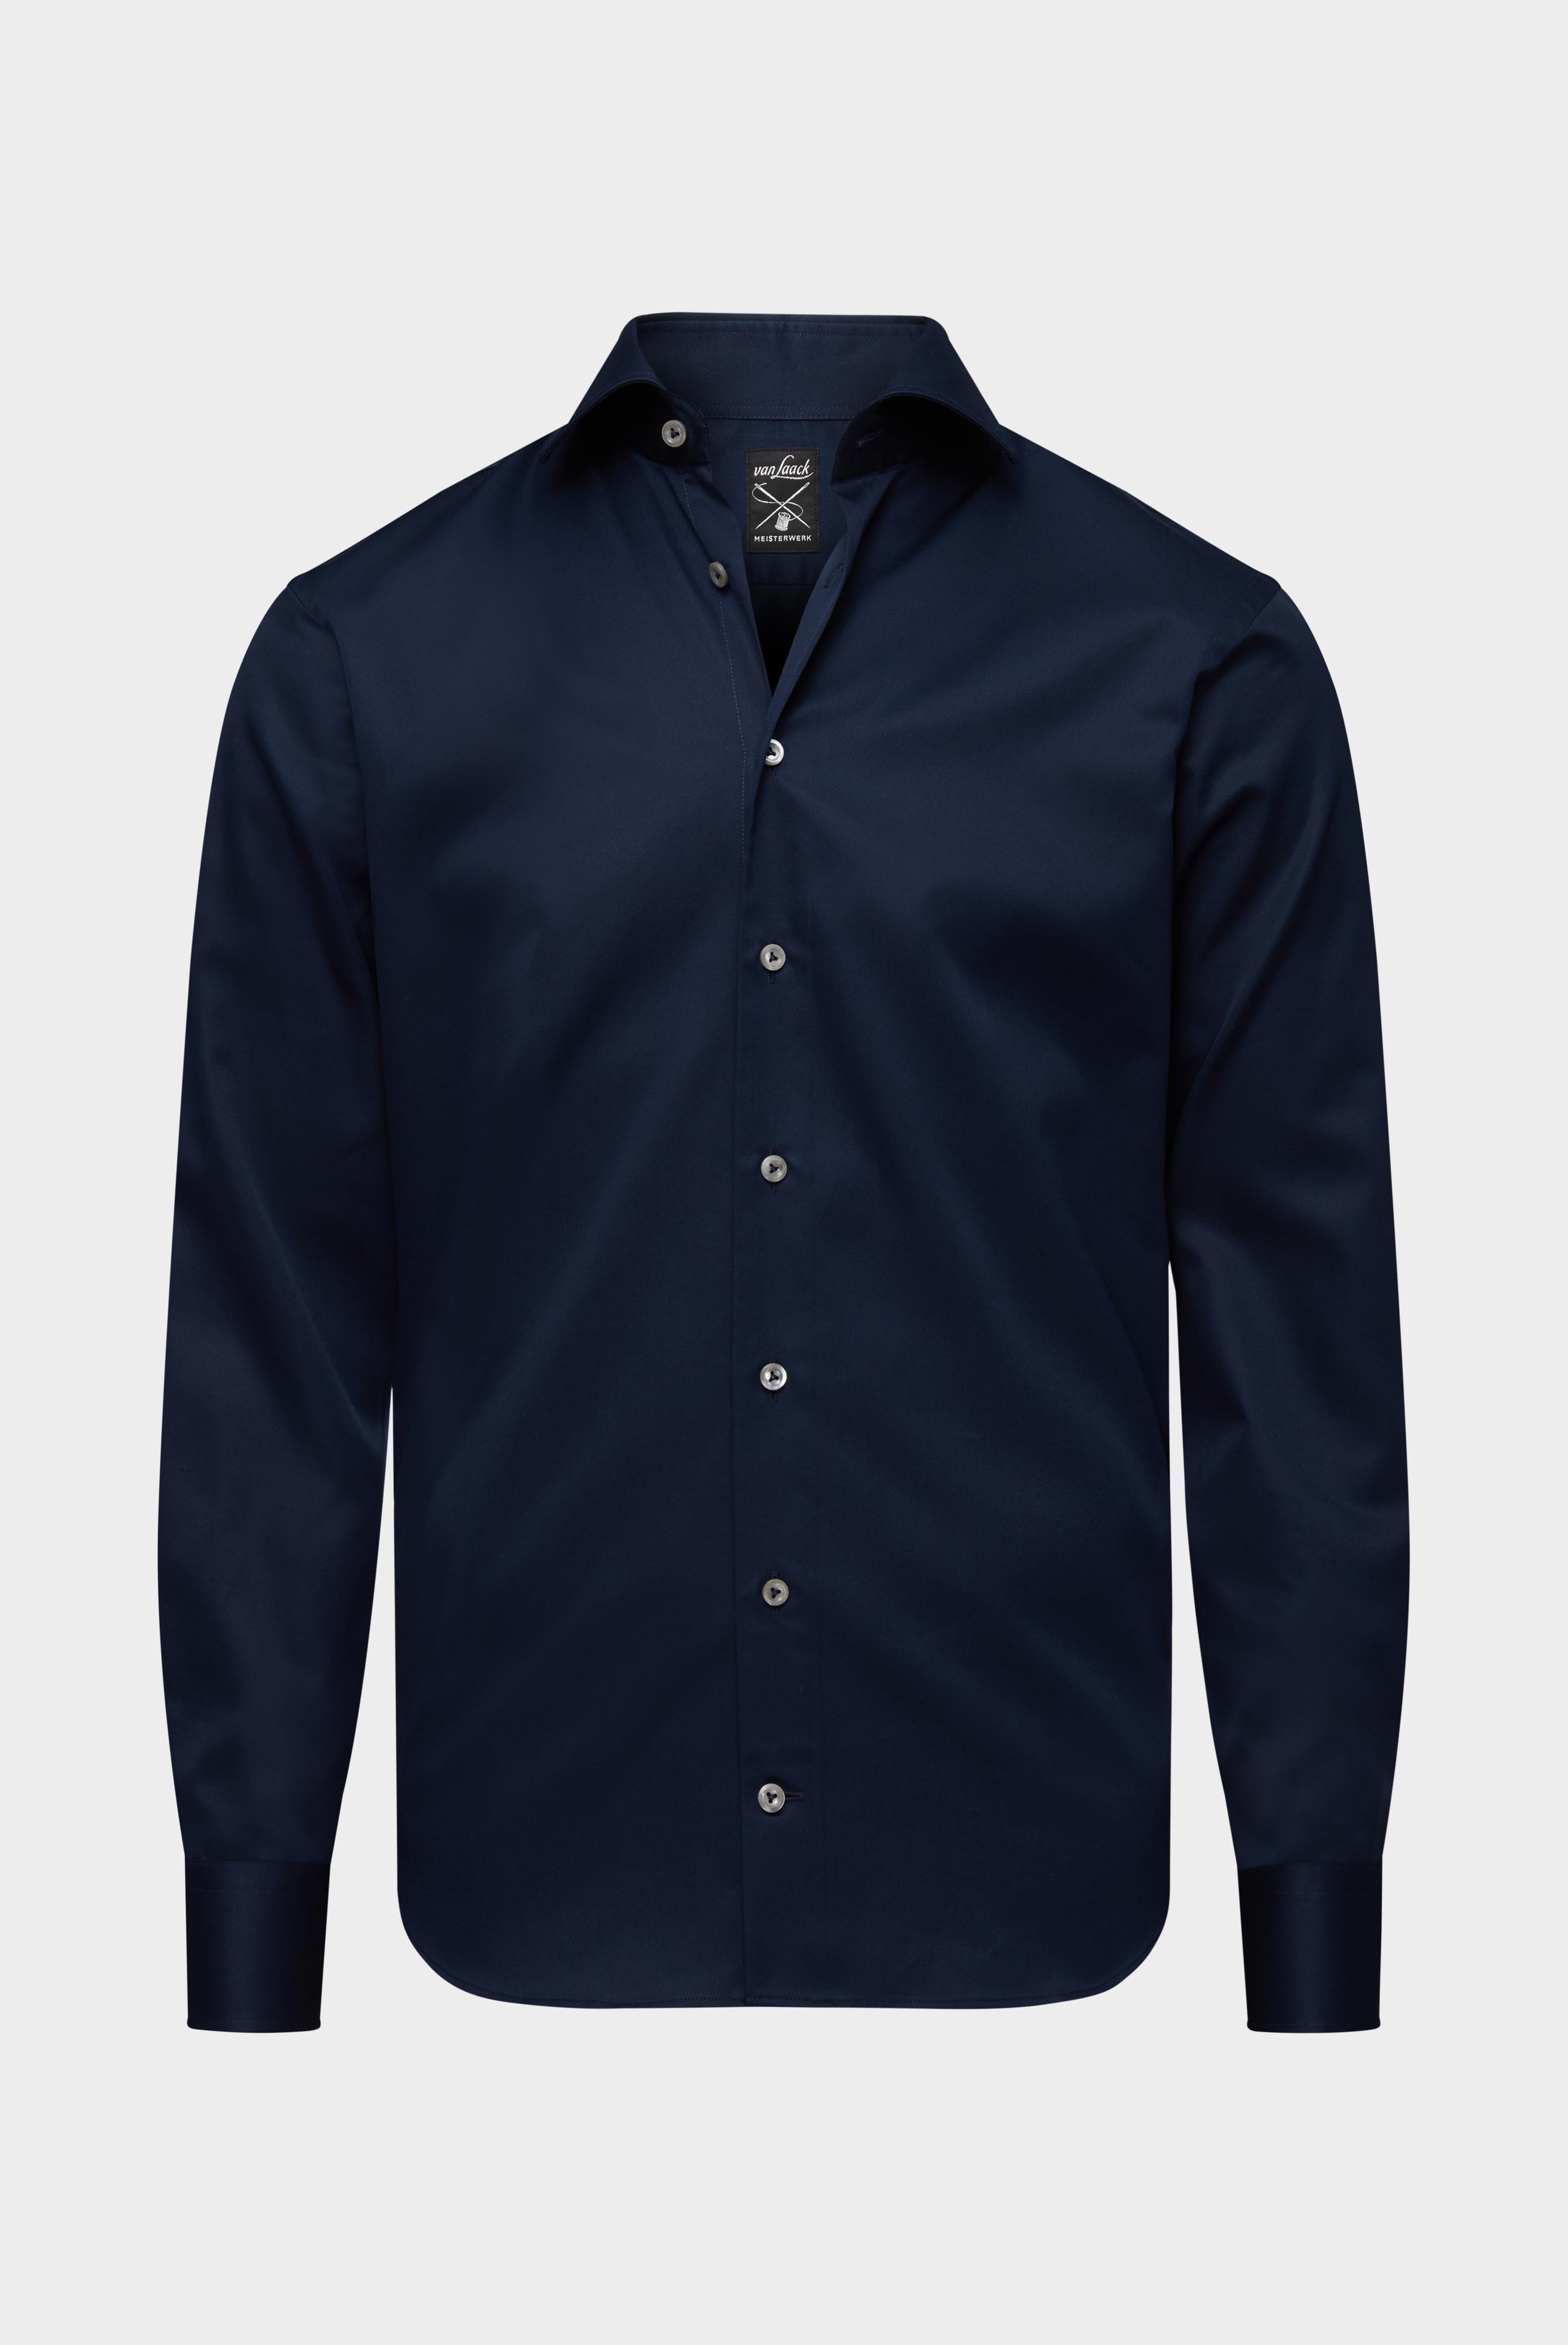 Bügelleichte Hemden+Bügelfreies Twill Hemd Tailor Fit+20.2020.BQ.132241.785.41